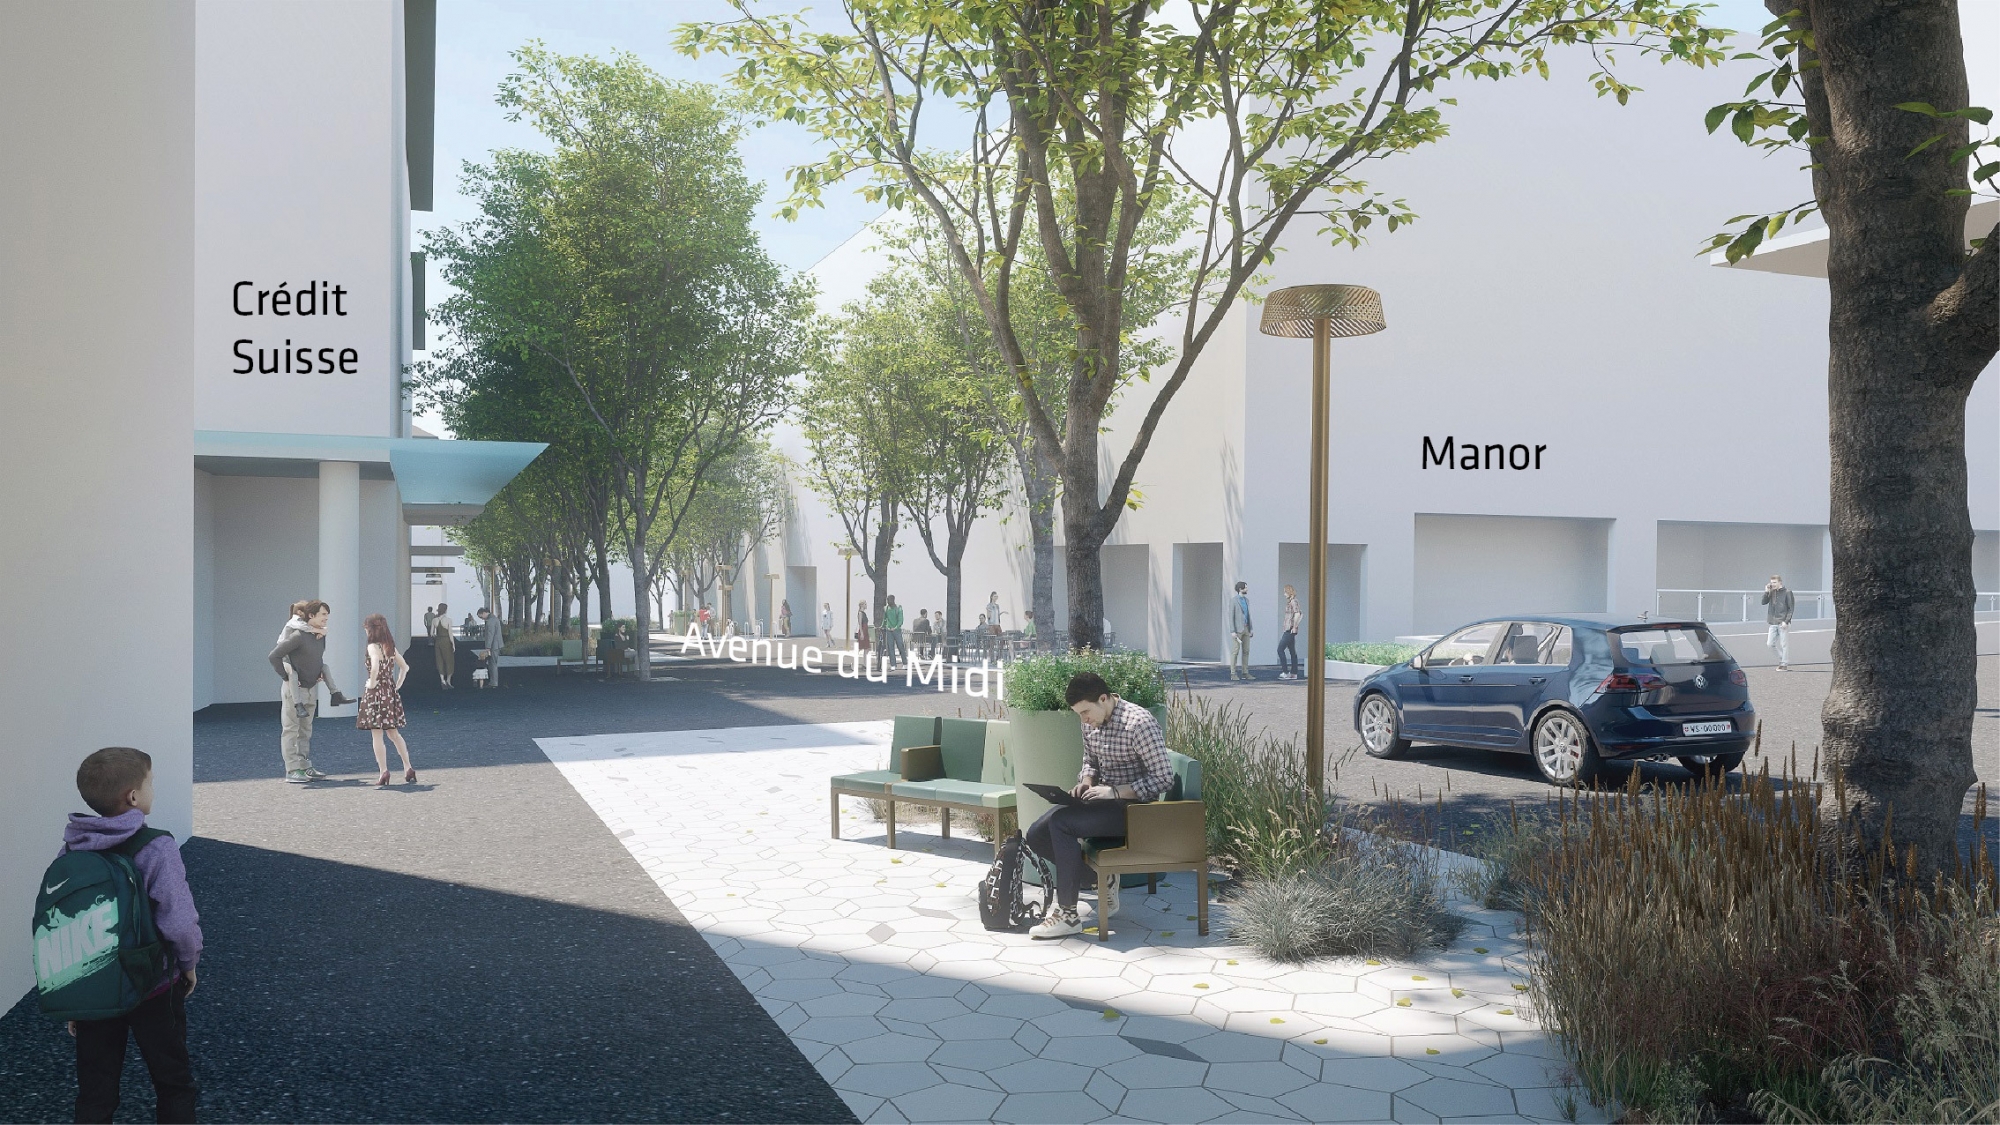 Le réaménagement de l'Avenue du midi prévoit la disparition des marquages au sol, l'installation de mobilier urbain végétalisé et l'expansion des terrasses.